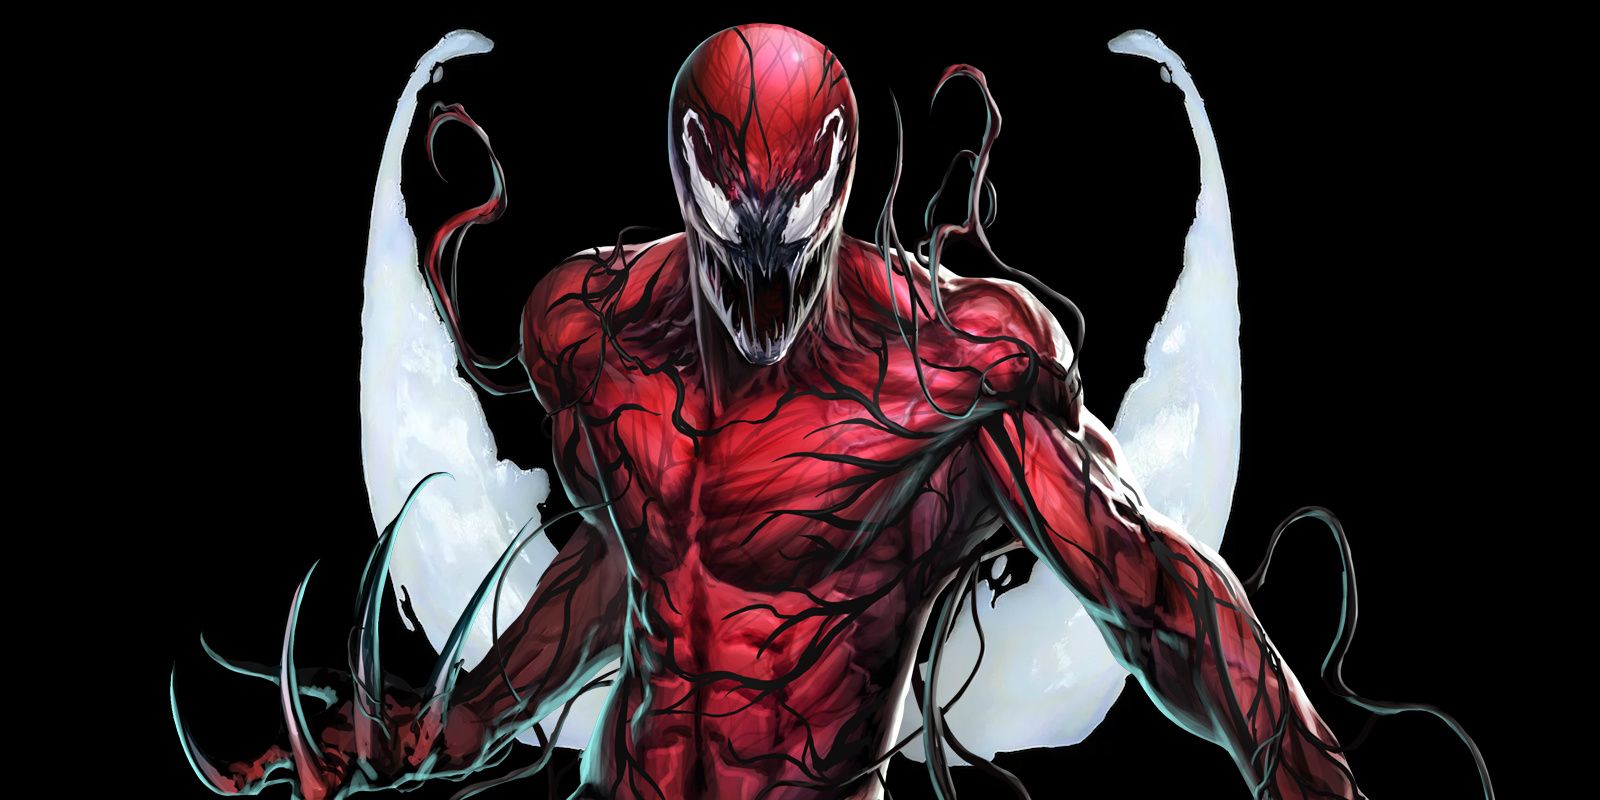 "Estoy evolucionando": Carnage está superando oficialmente a Venom como el principal simbionte de Marvel, eliminando su última debilidad